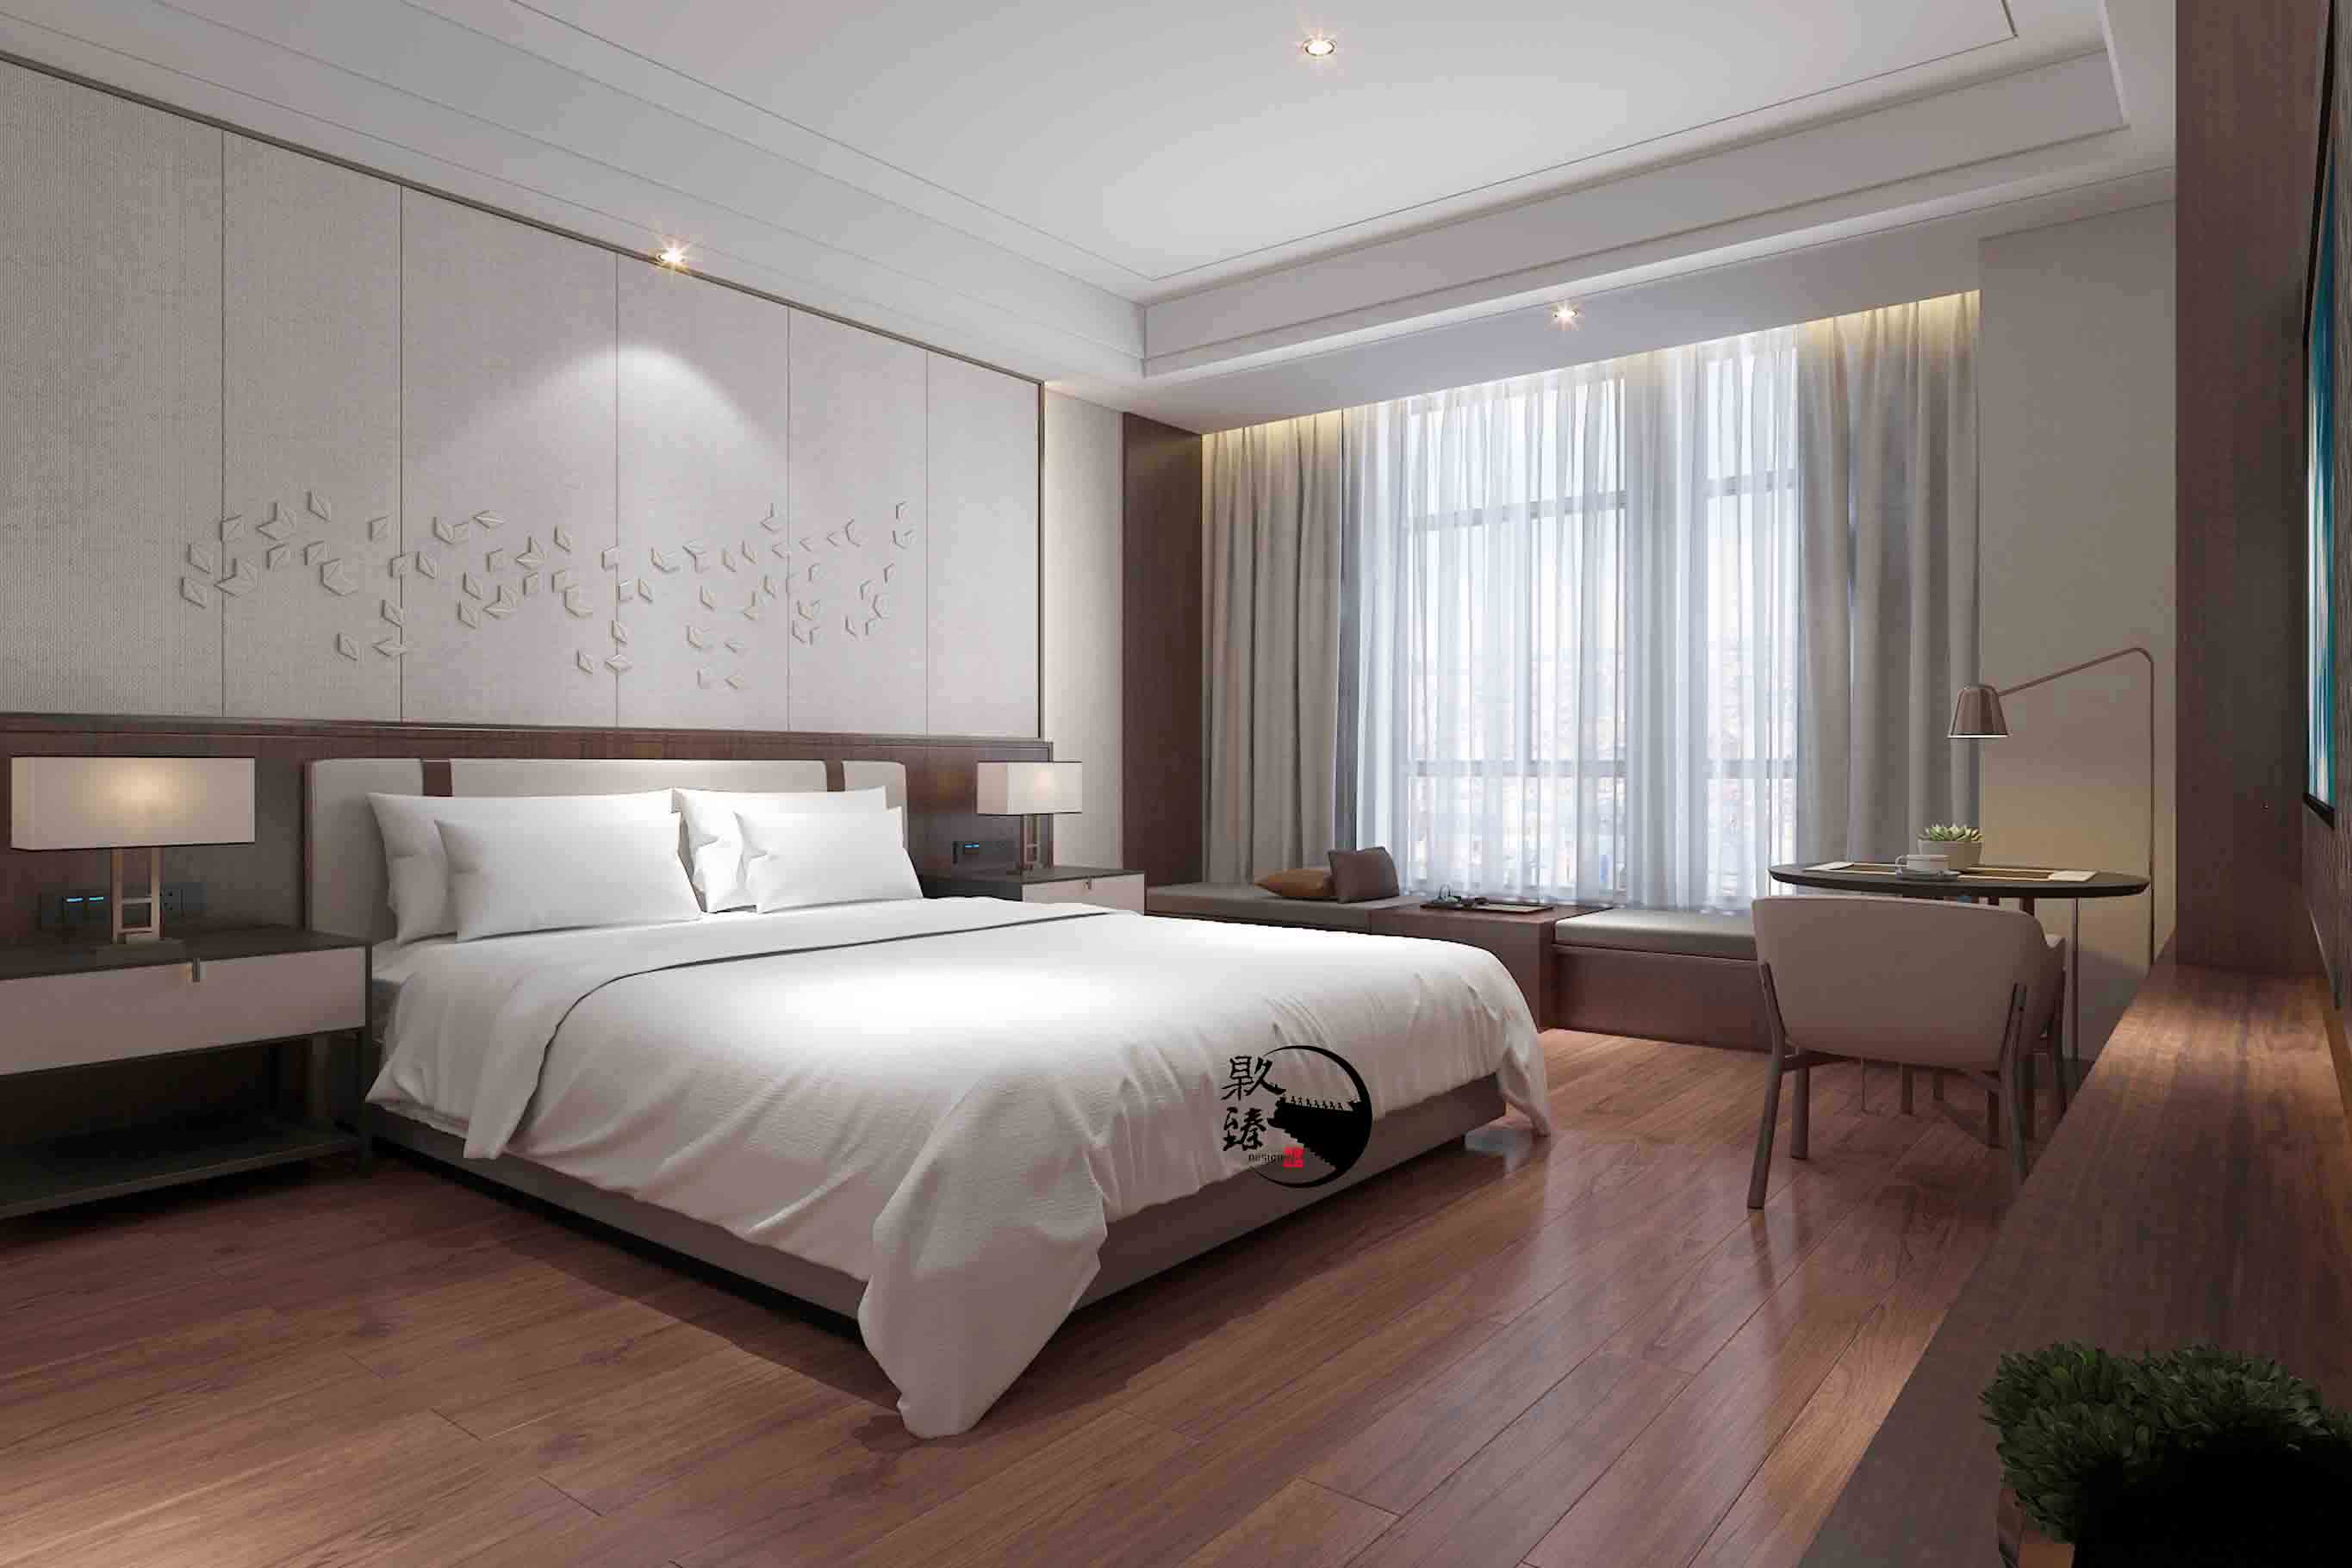 红寺堡米素酒店设计|满足客户对舒适和安静的需求